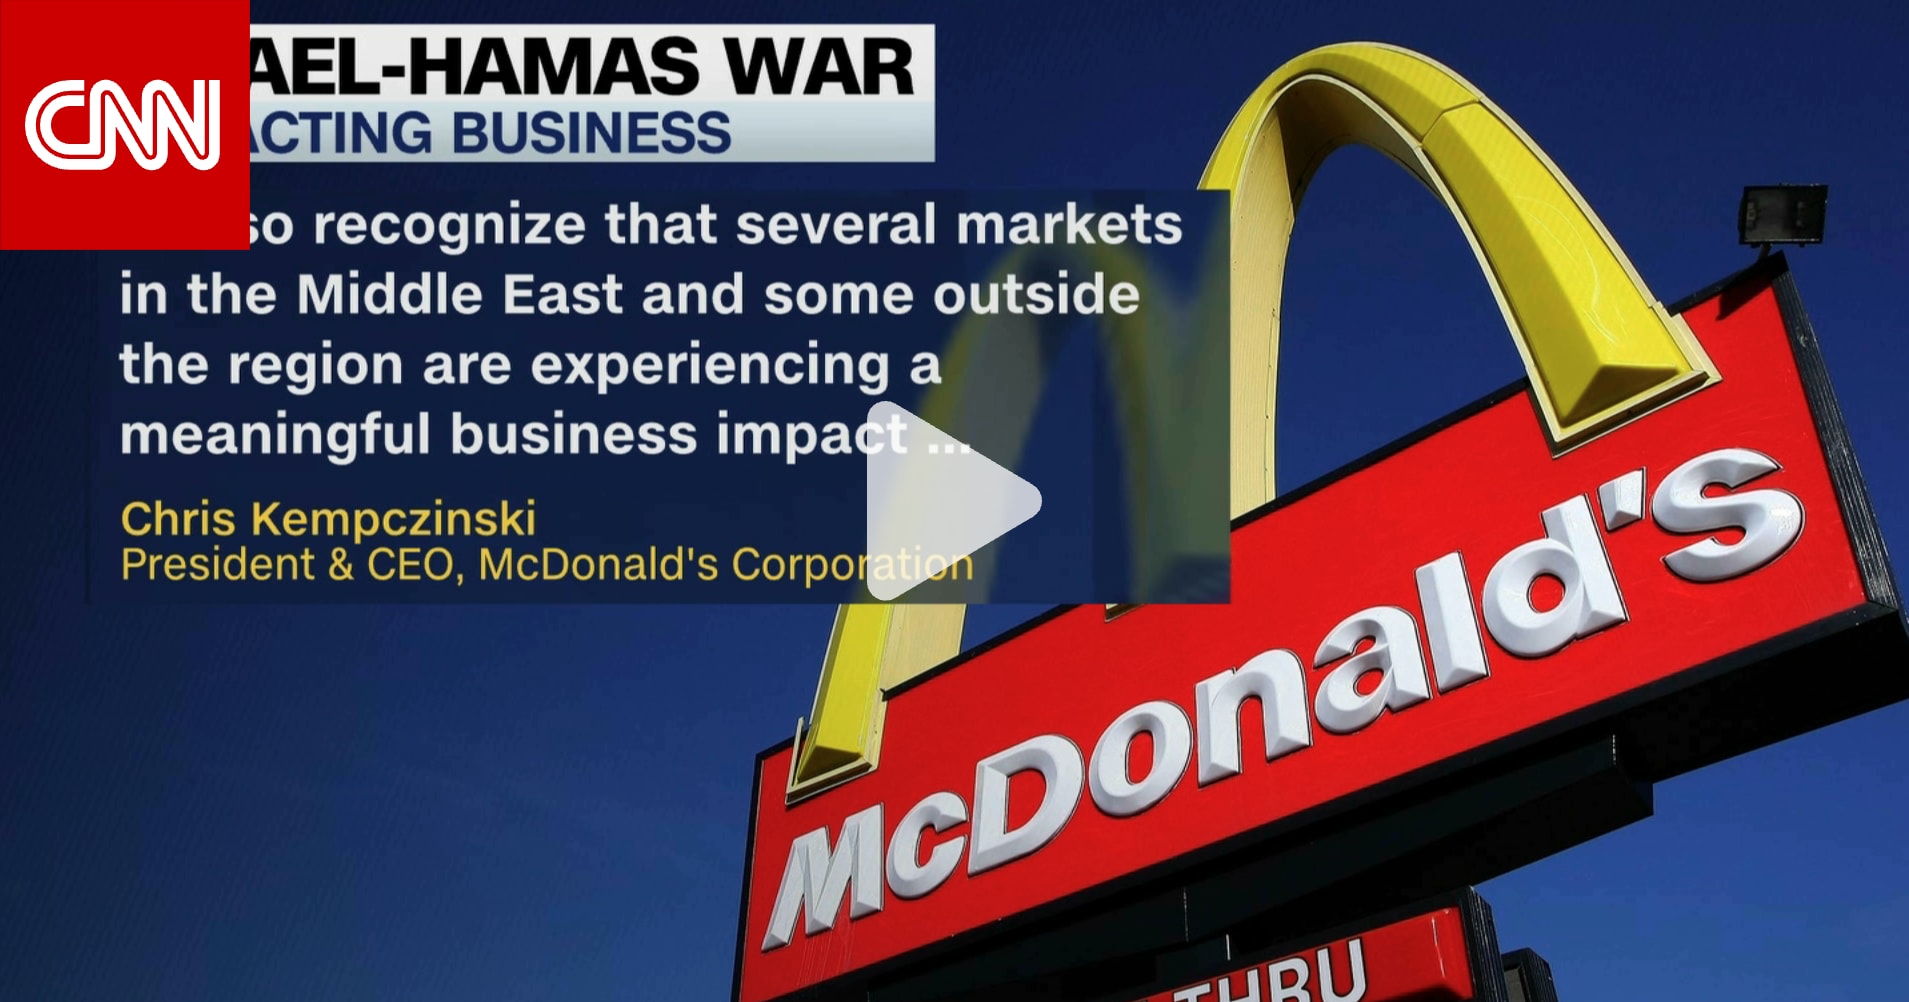 ماكدونالدز تأثرت بصراع إسرائيل وحماس.. ورئيسها التنفيذي يعترف